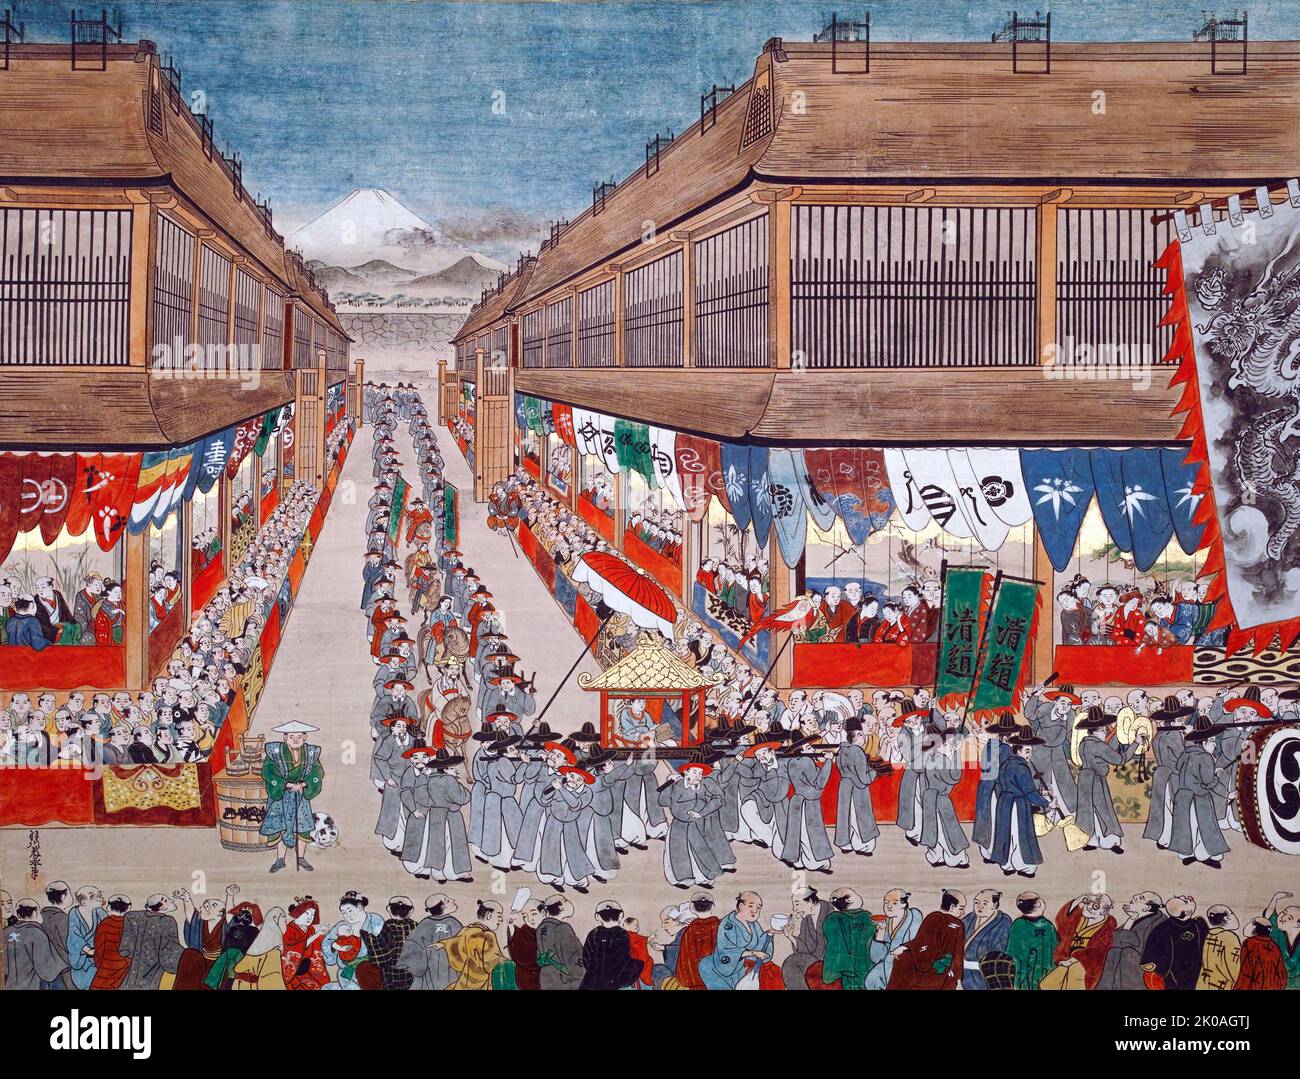 Scelto Tsushin-shi Raicho-zu, dipinto giapponese di Toei Hangawa, raffigurante la processione delle 1748 missioni Joseon in Giappone a Edo. Collezione del Museo della Città di Kobe, la Galleria Hajime Ikenaga. Si tratta di un dipinto paesaggistico dell'ambasciatore coreano della comunicazione, compresa la figura equestre, che marciando in modo ordinato. Questo stile è nato a Edo negli anni '1740s ed è stato chiamato Uki-e perché le cose nel dipinto sembravano tridimensionali. Foto Stock